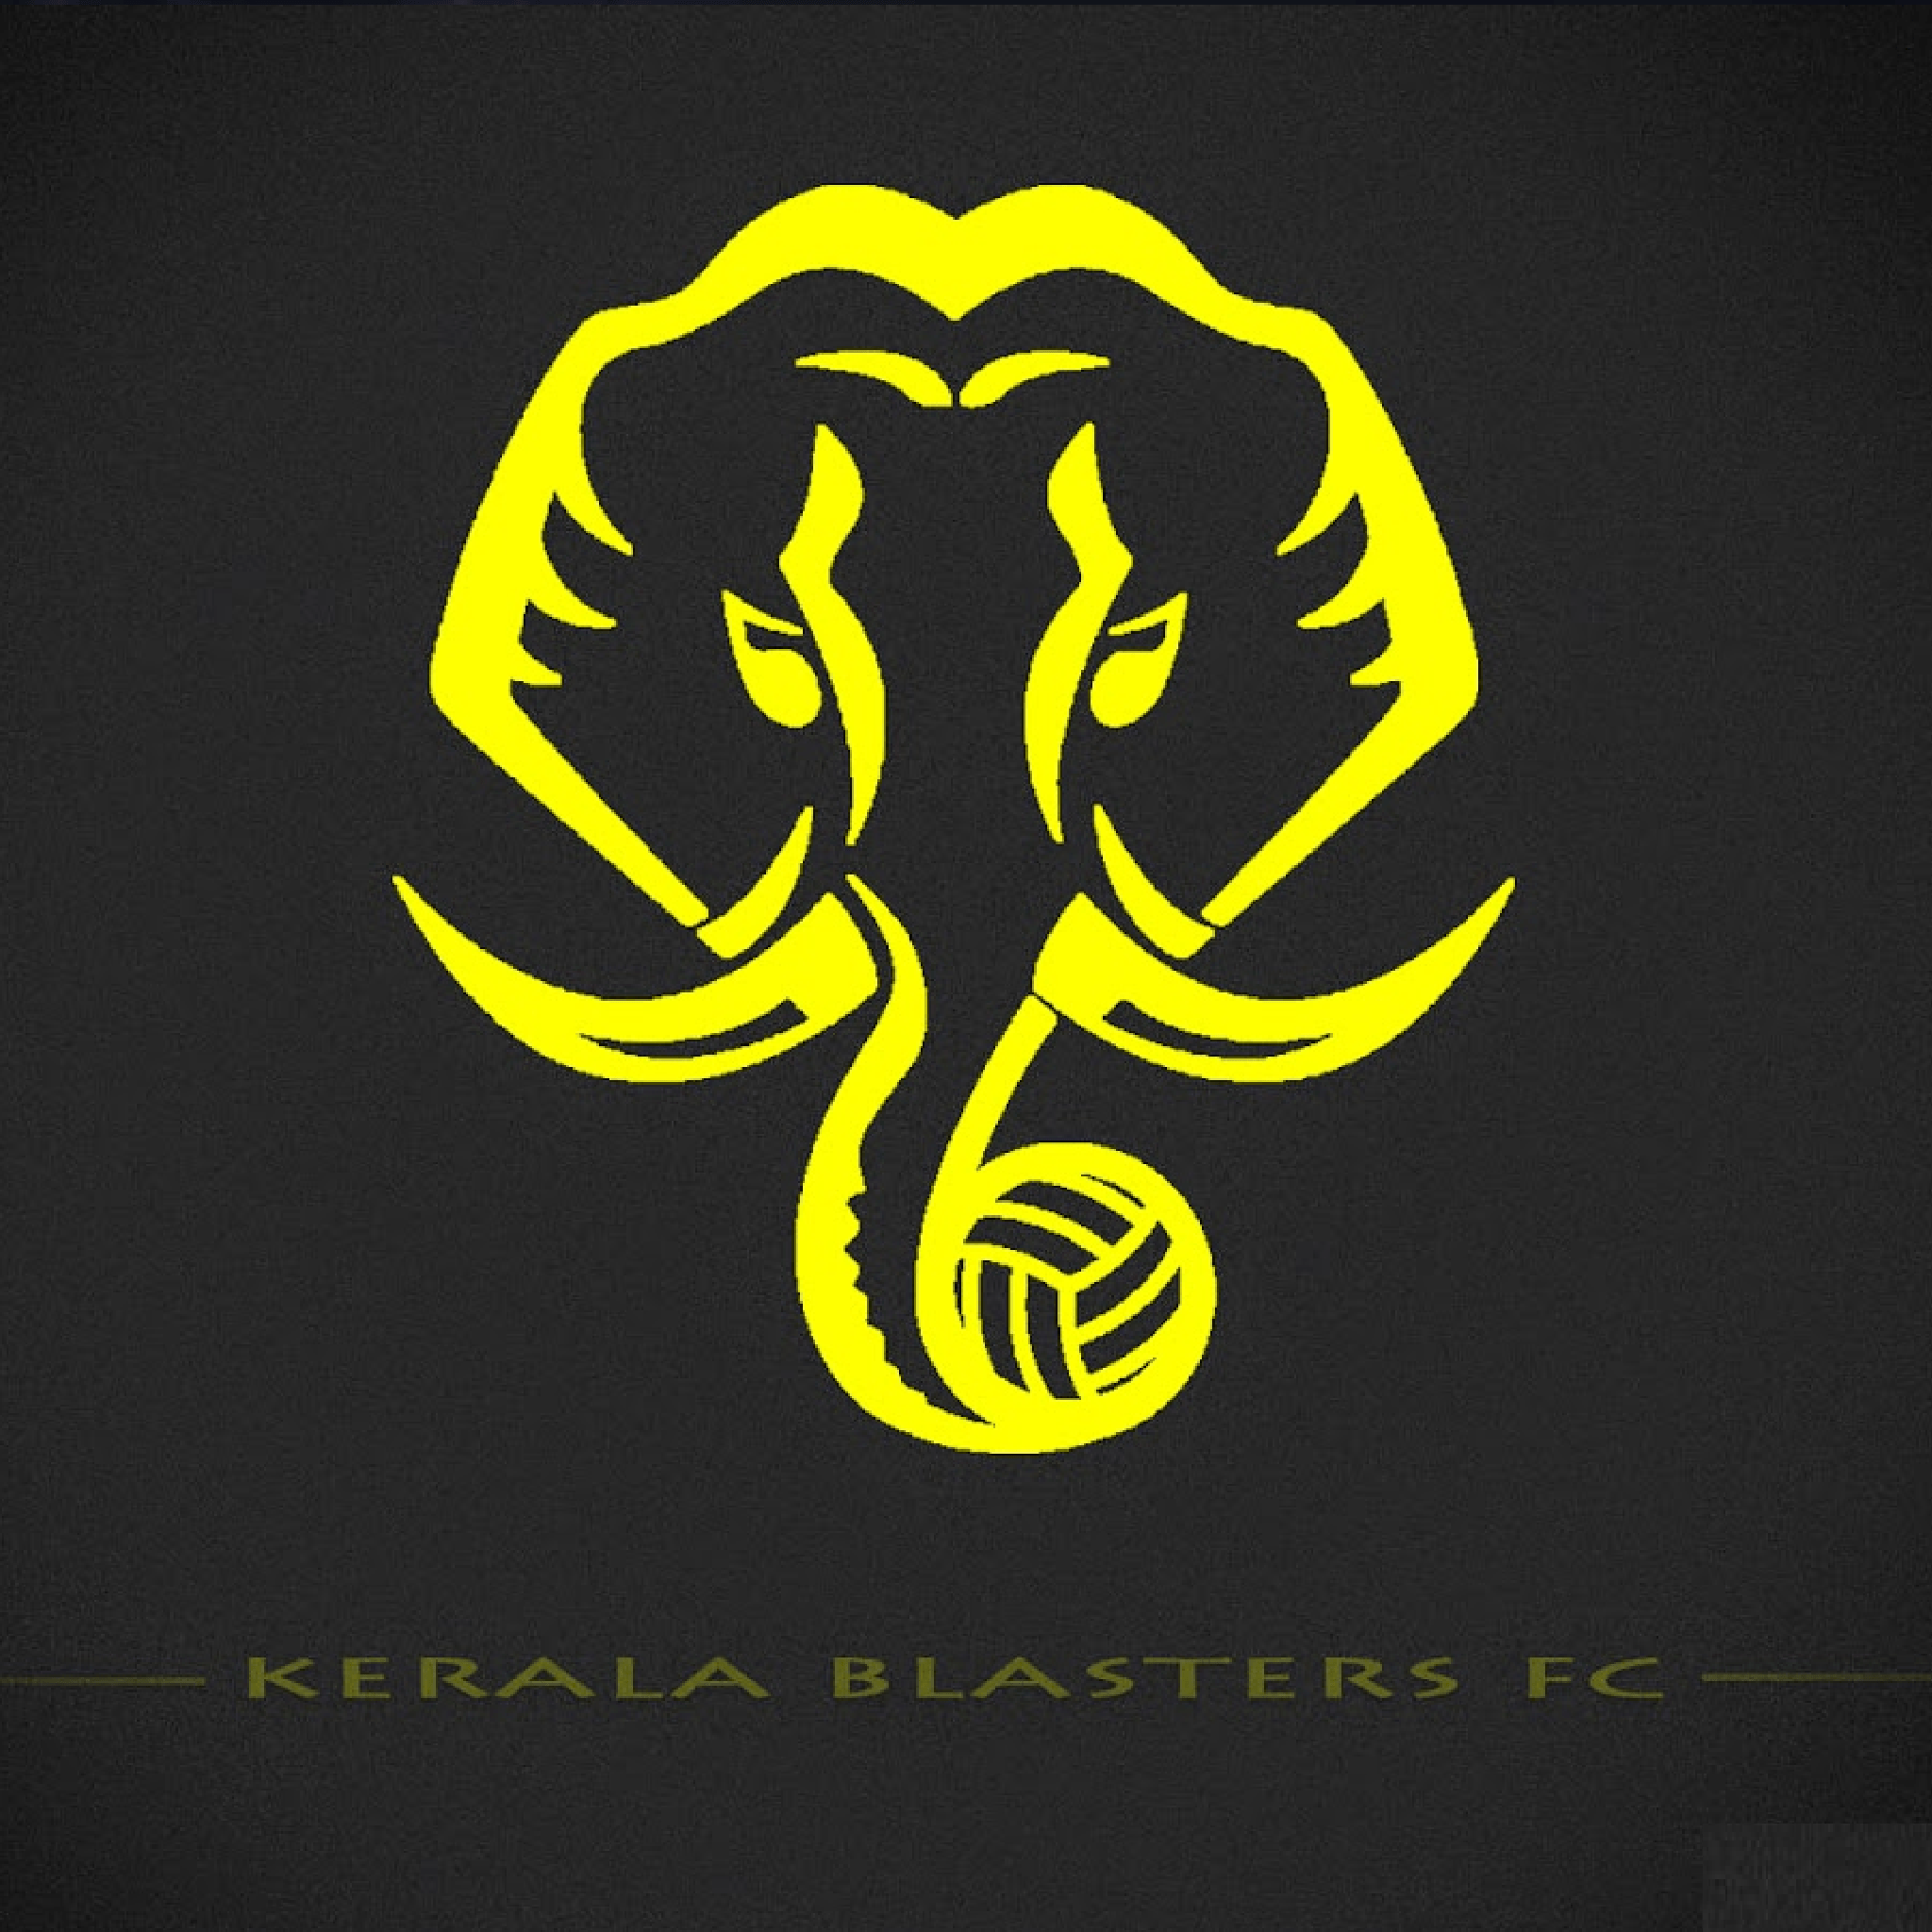 Download Kerala Blasters FC 2048 x 2048 Wallpaper